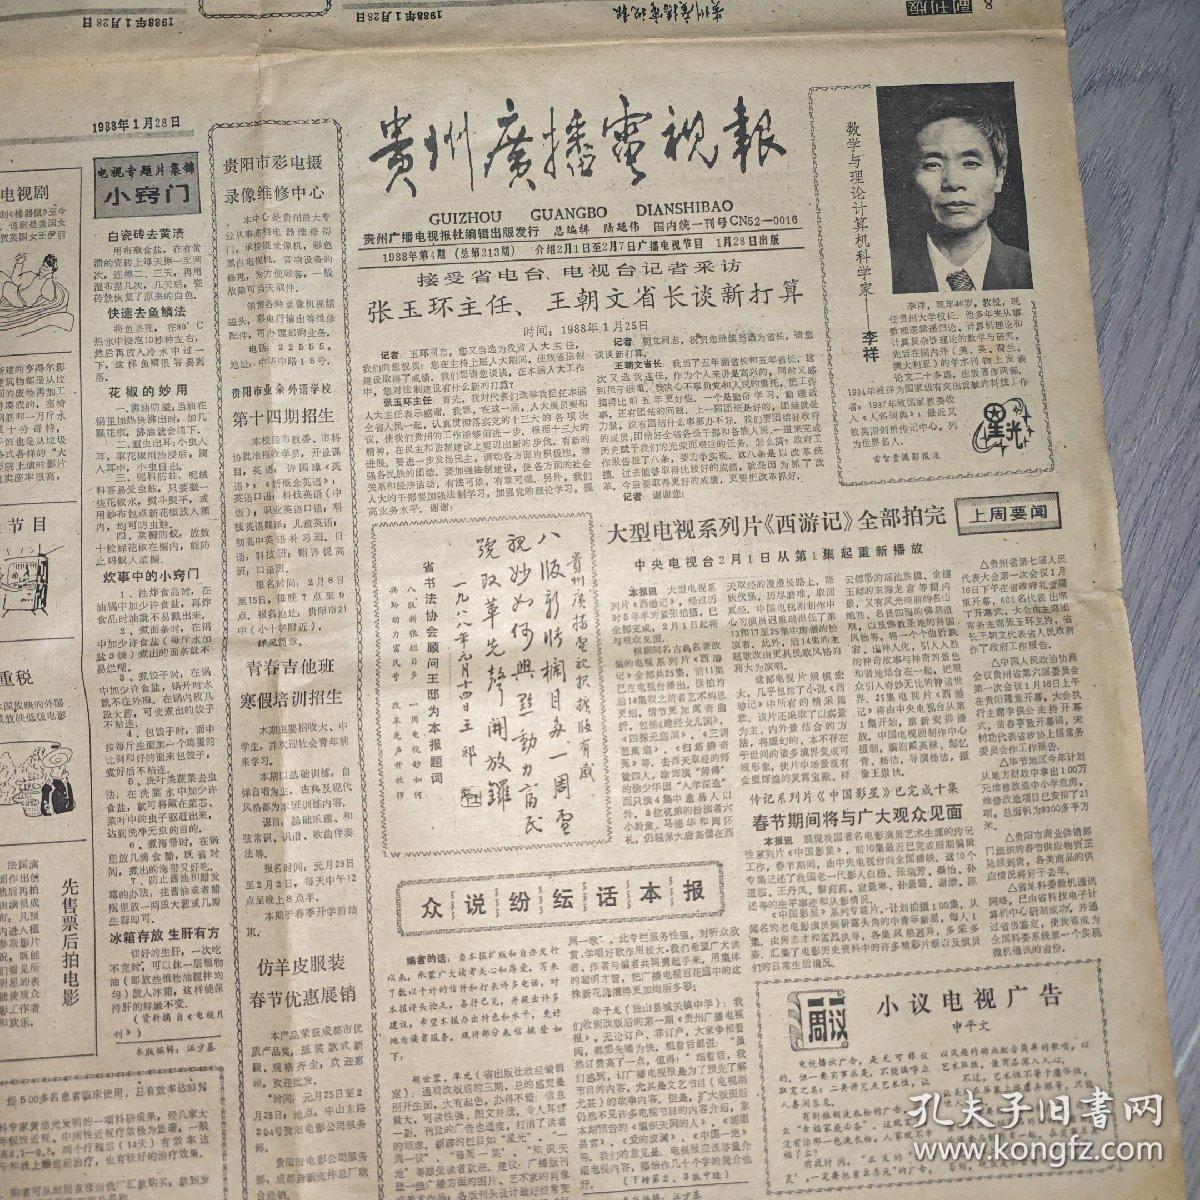 贵州广播电视报 1988年 第4期    共8版  实物图 品如图     货号56-8